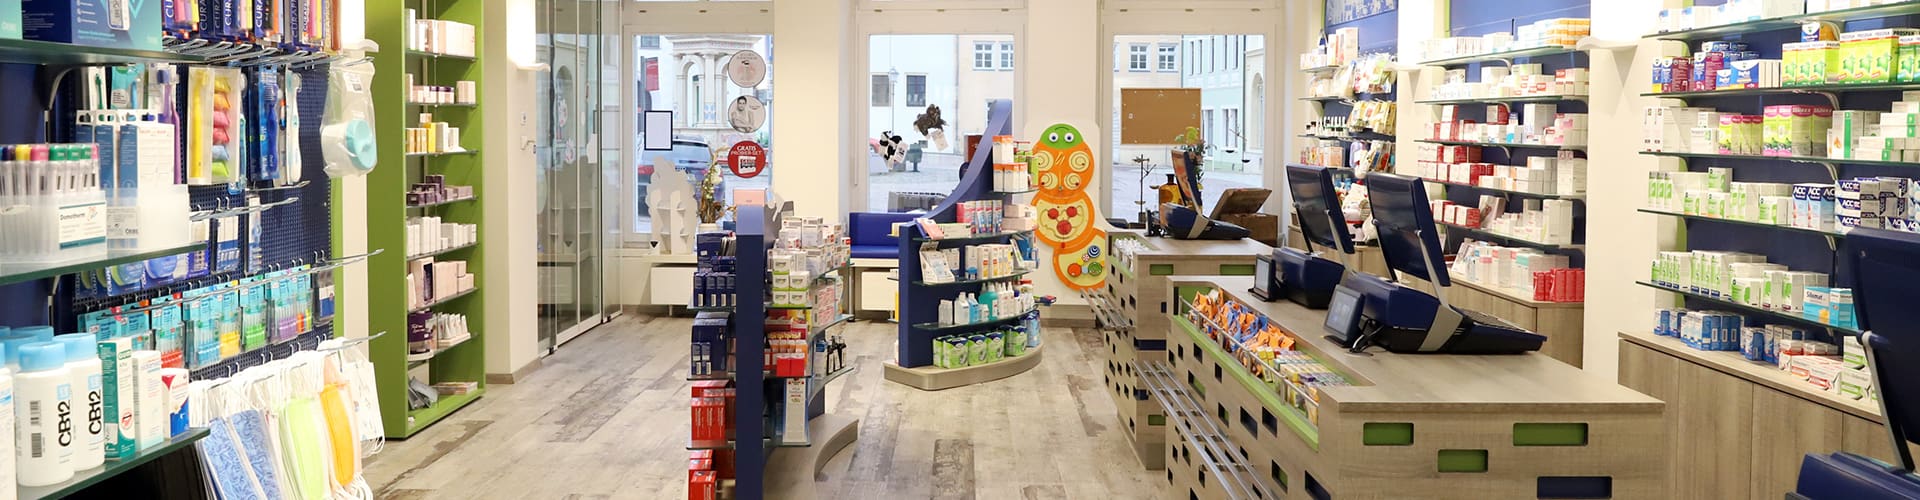 Löwen-Apotheke Oschatz Blick durch gesamten Verkaufsraum mit Kassenbereich rechts & Fensterfront im Hintergrund